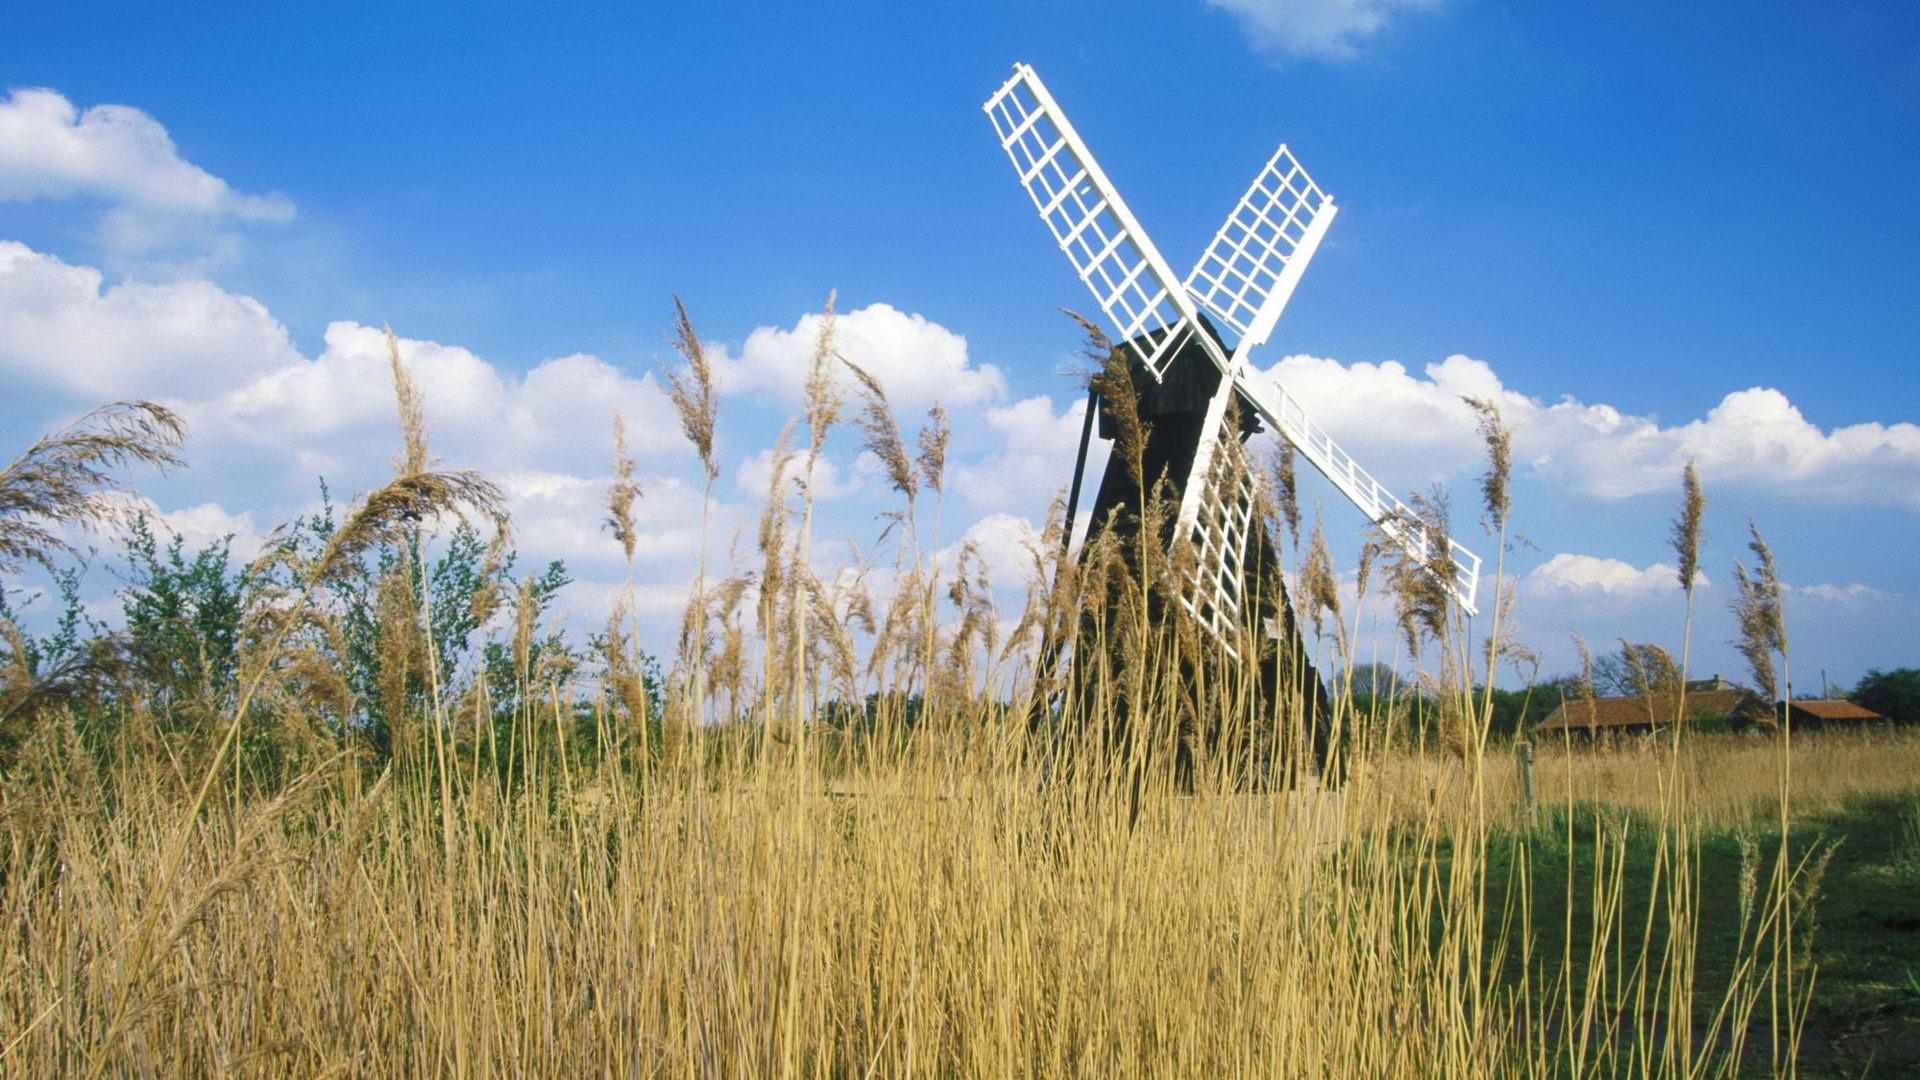 United Kingdom, windmills - desktop wallpaper